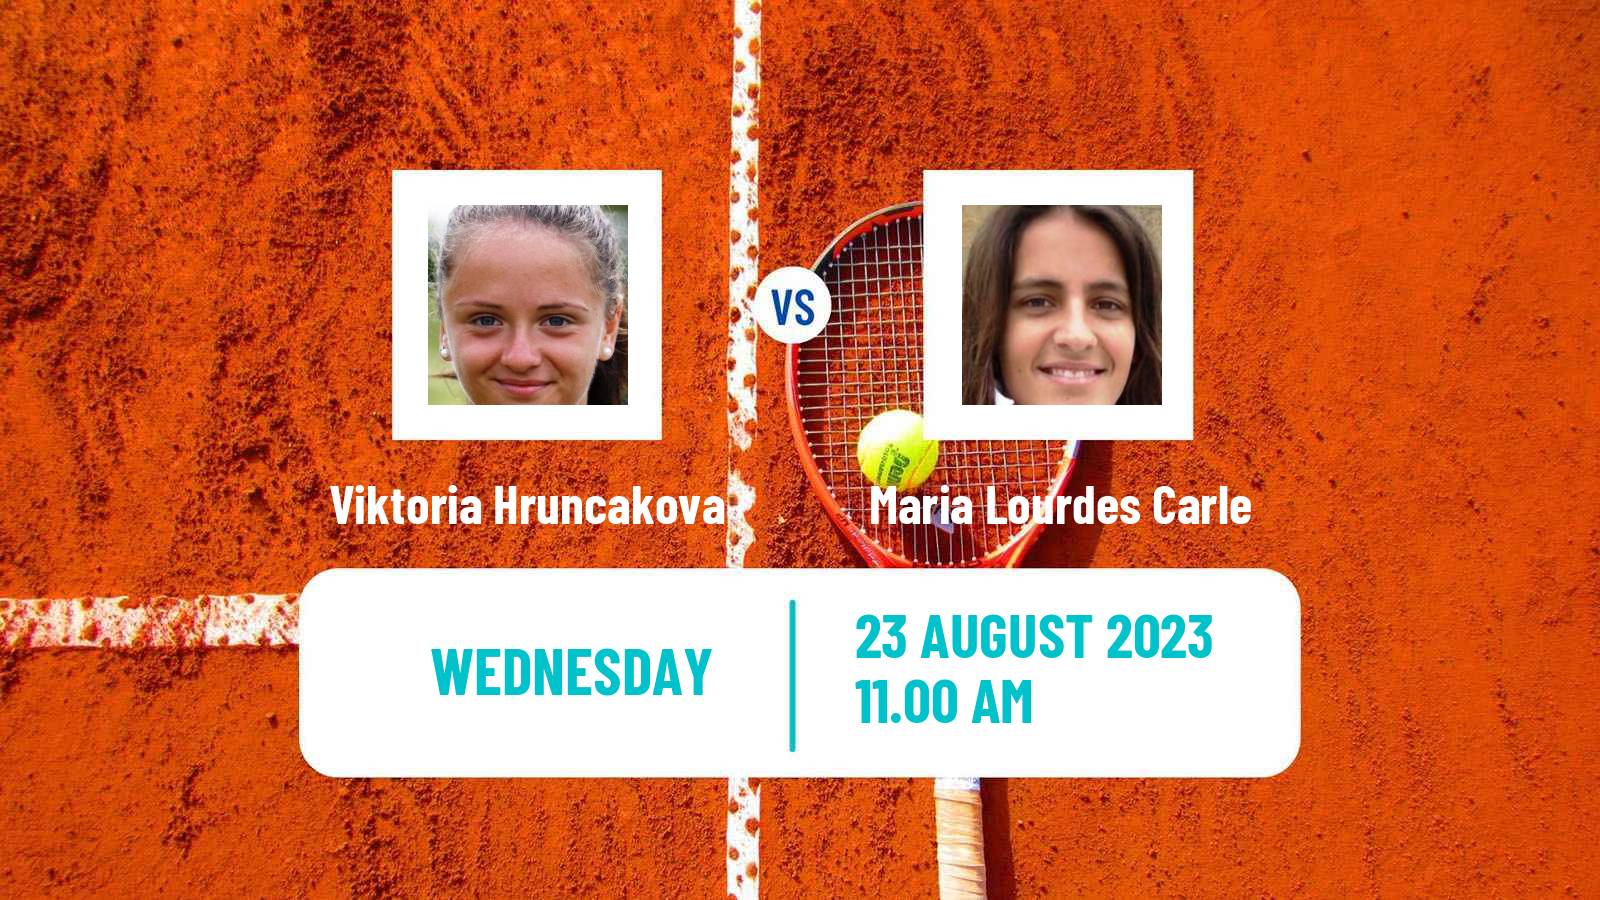 Tennis WTA US Open Viktoria Hruncakova - Maria Lourdes Carle